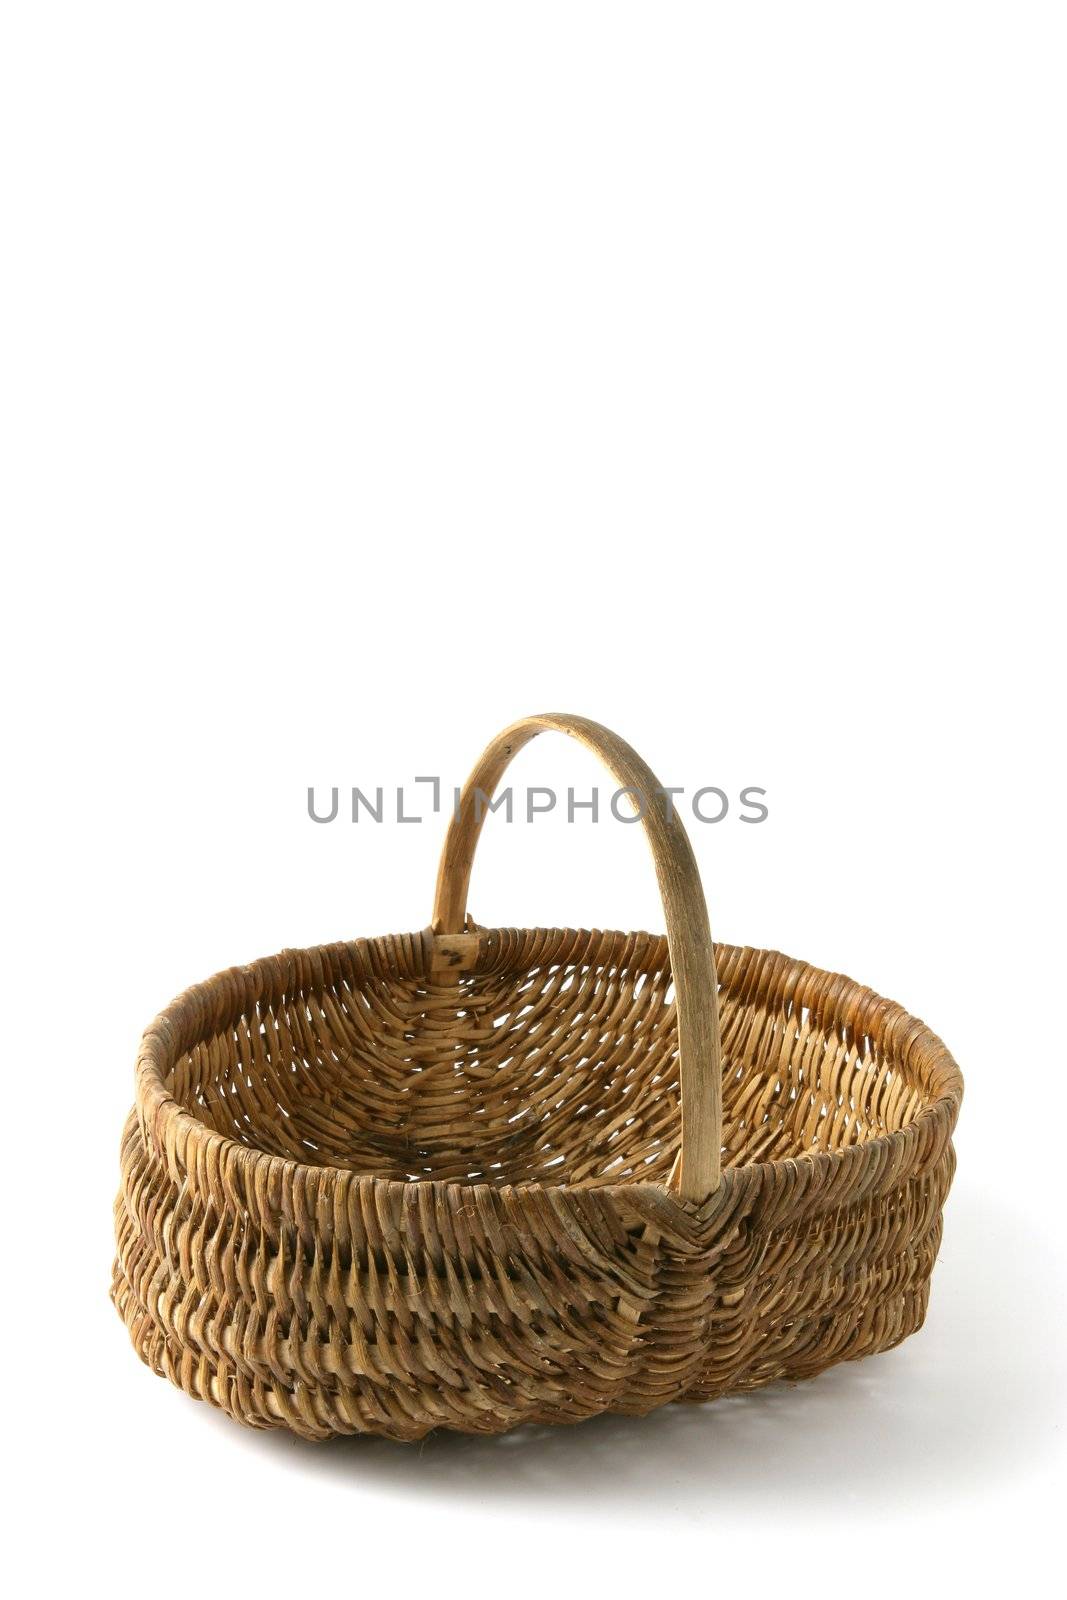 Empty wicker basket by phovoir